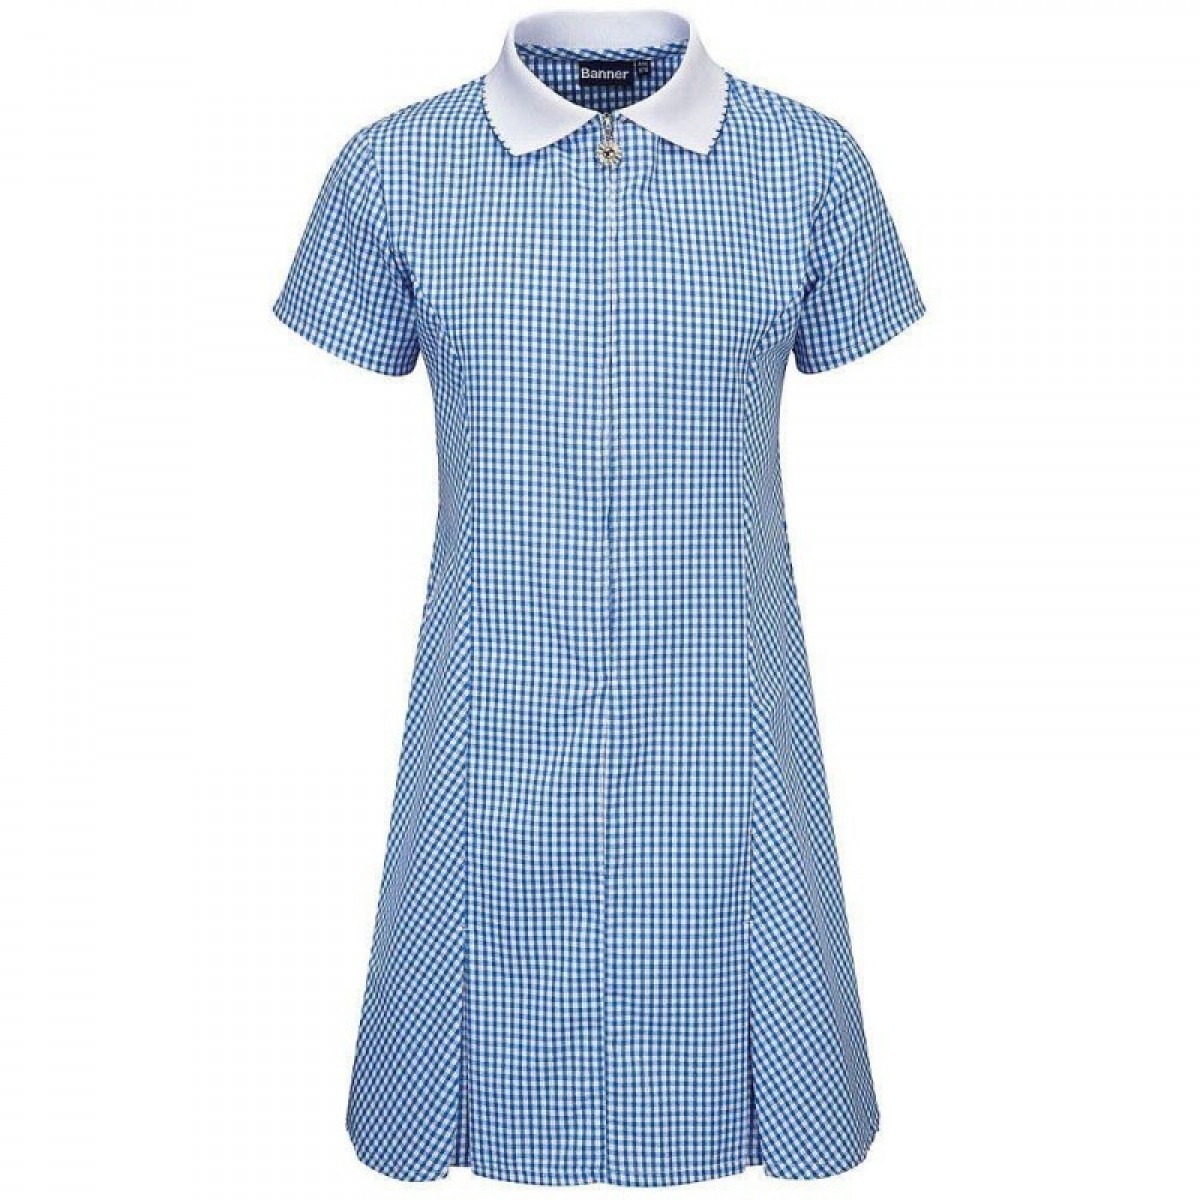 Summer Dress - Gingham design, Royal Blue/White - Girls - The Greville